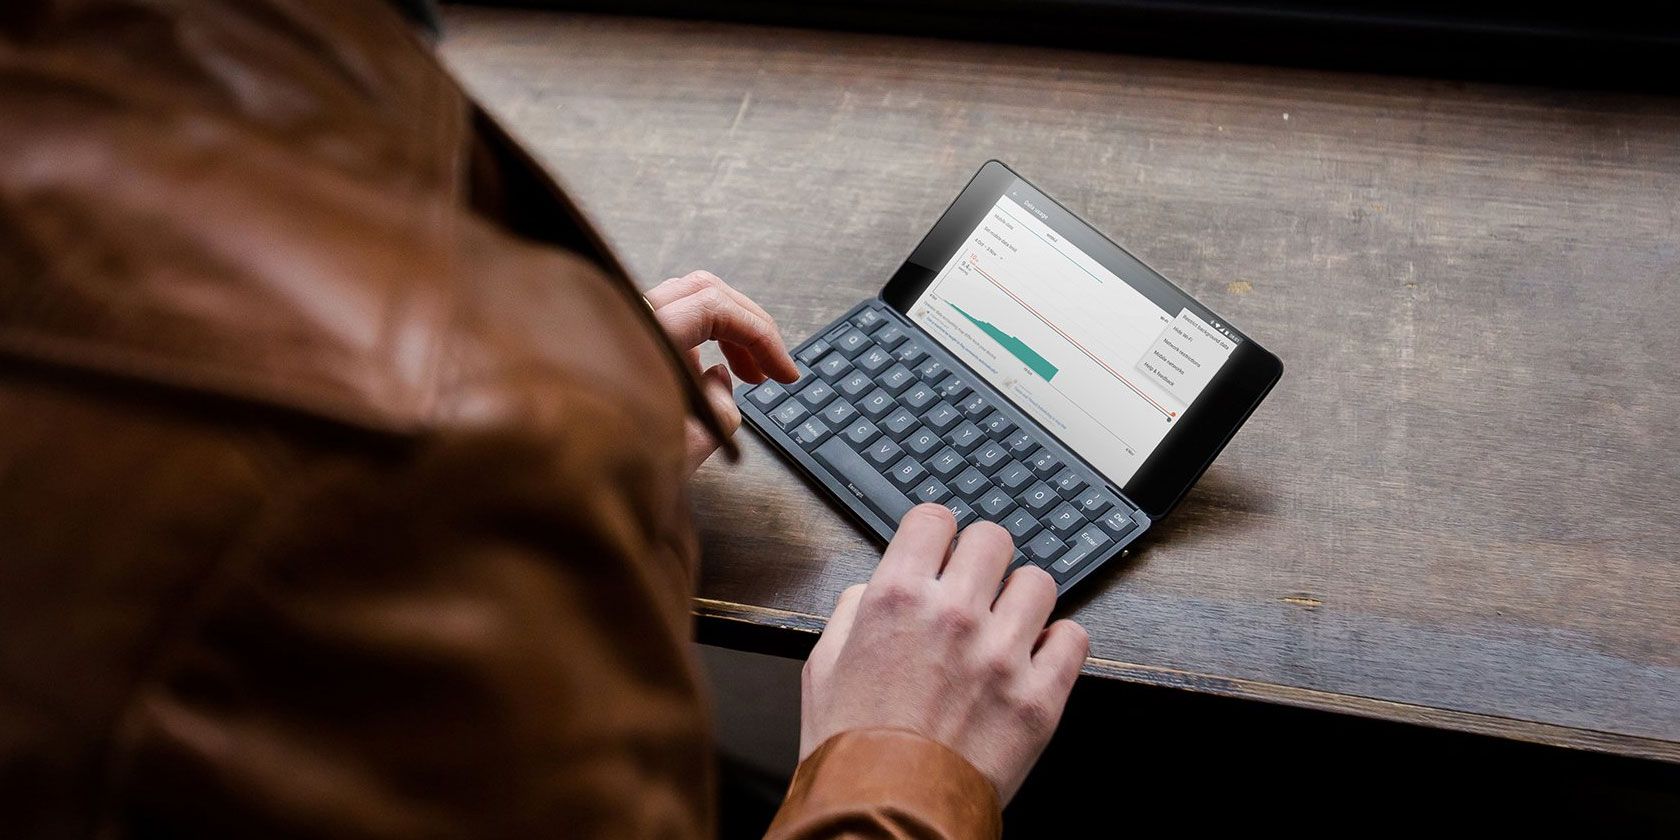 best linux for tablet 2019